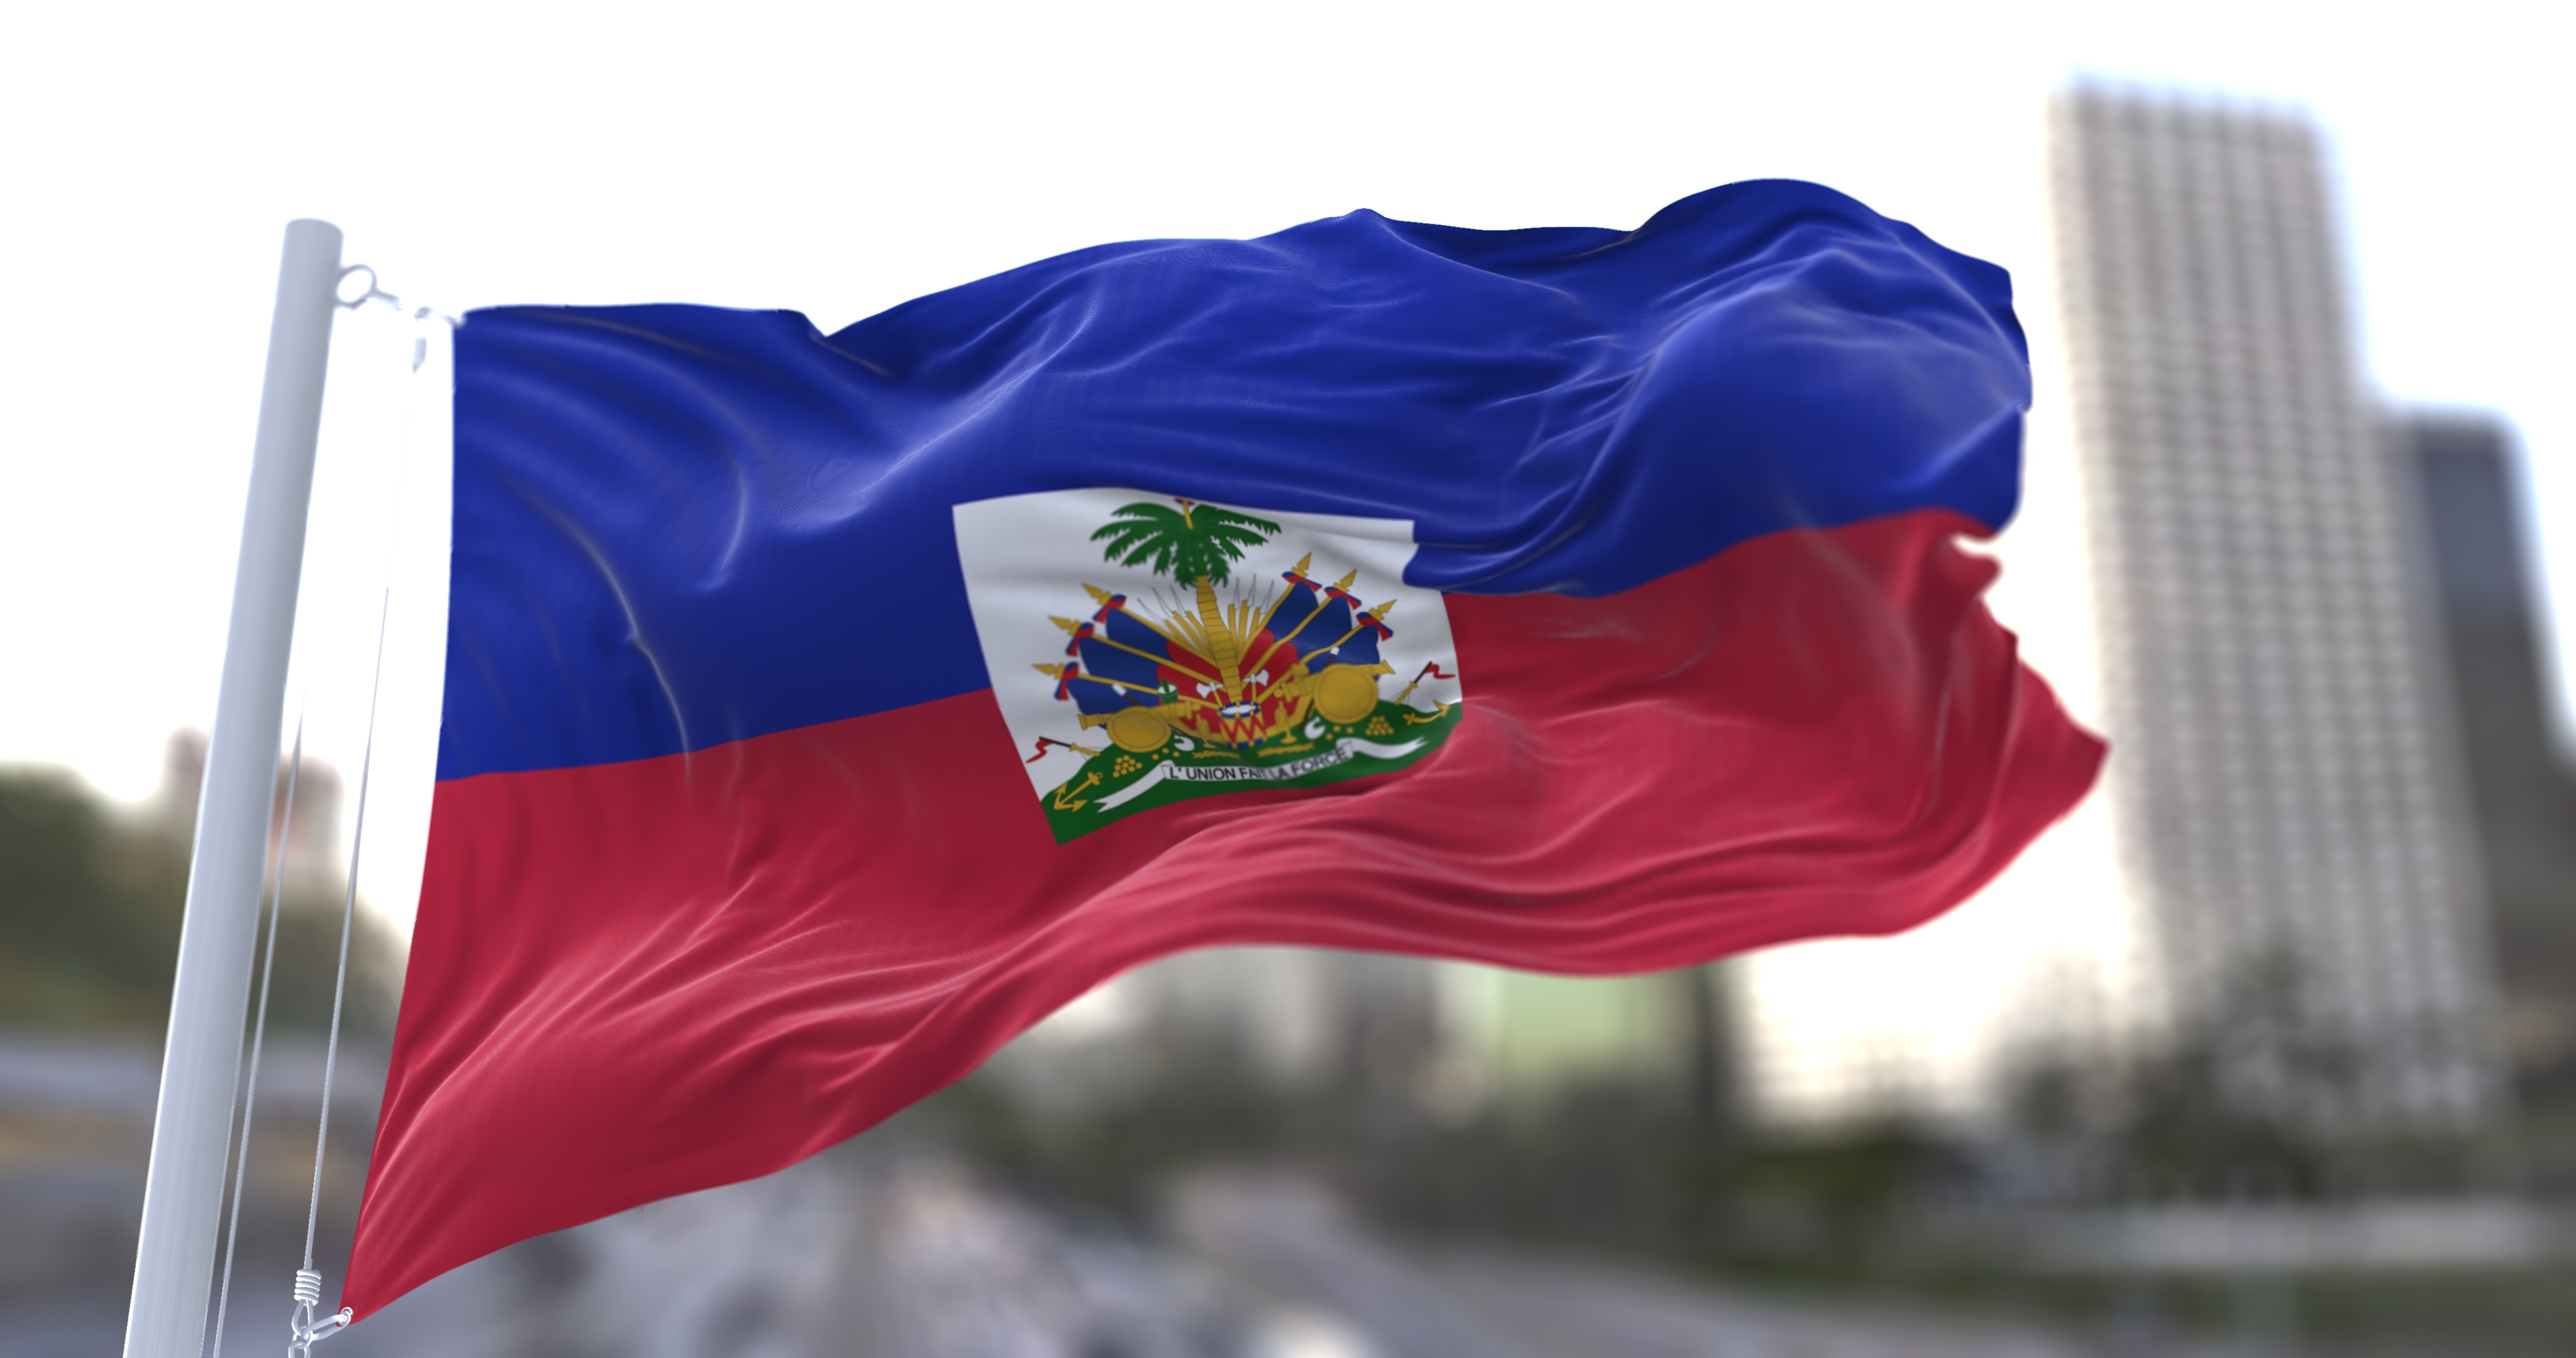     Haïti n’a plus d’élu politique

